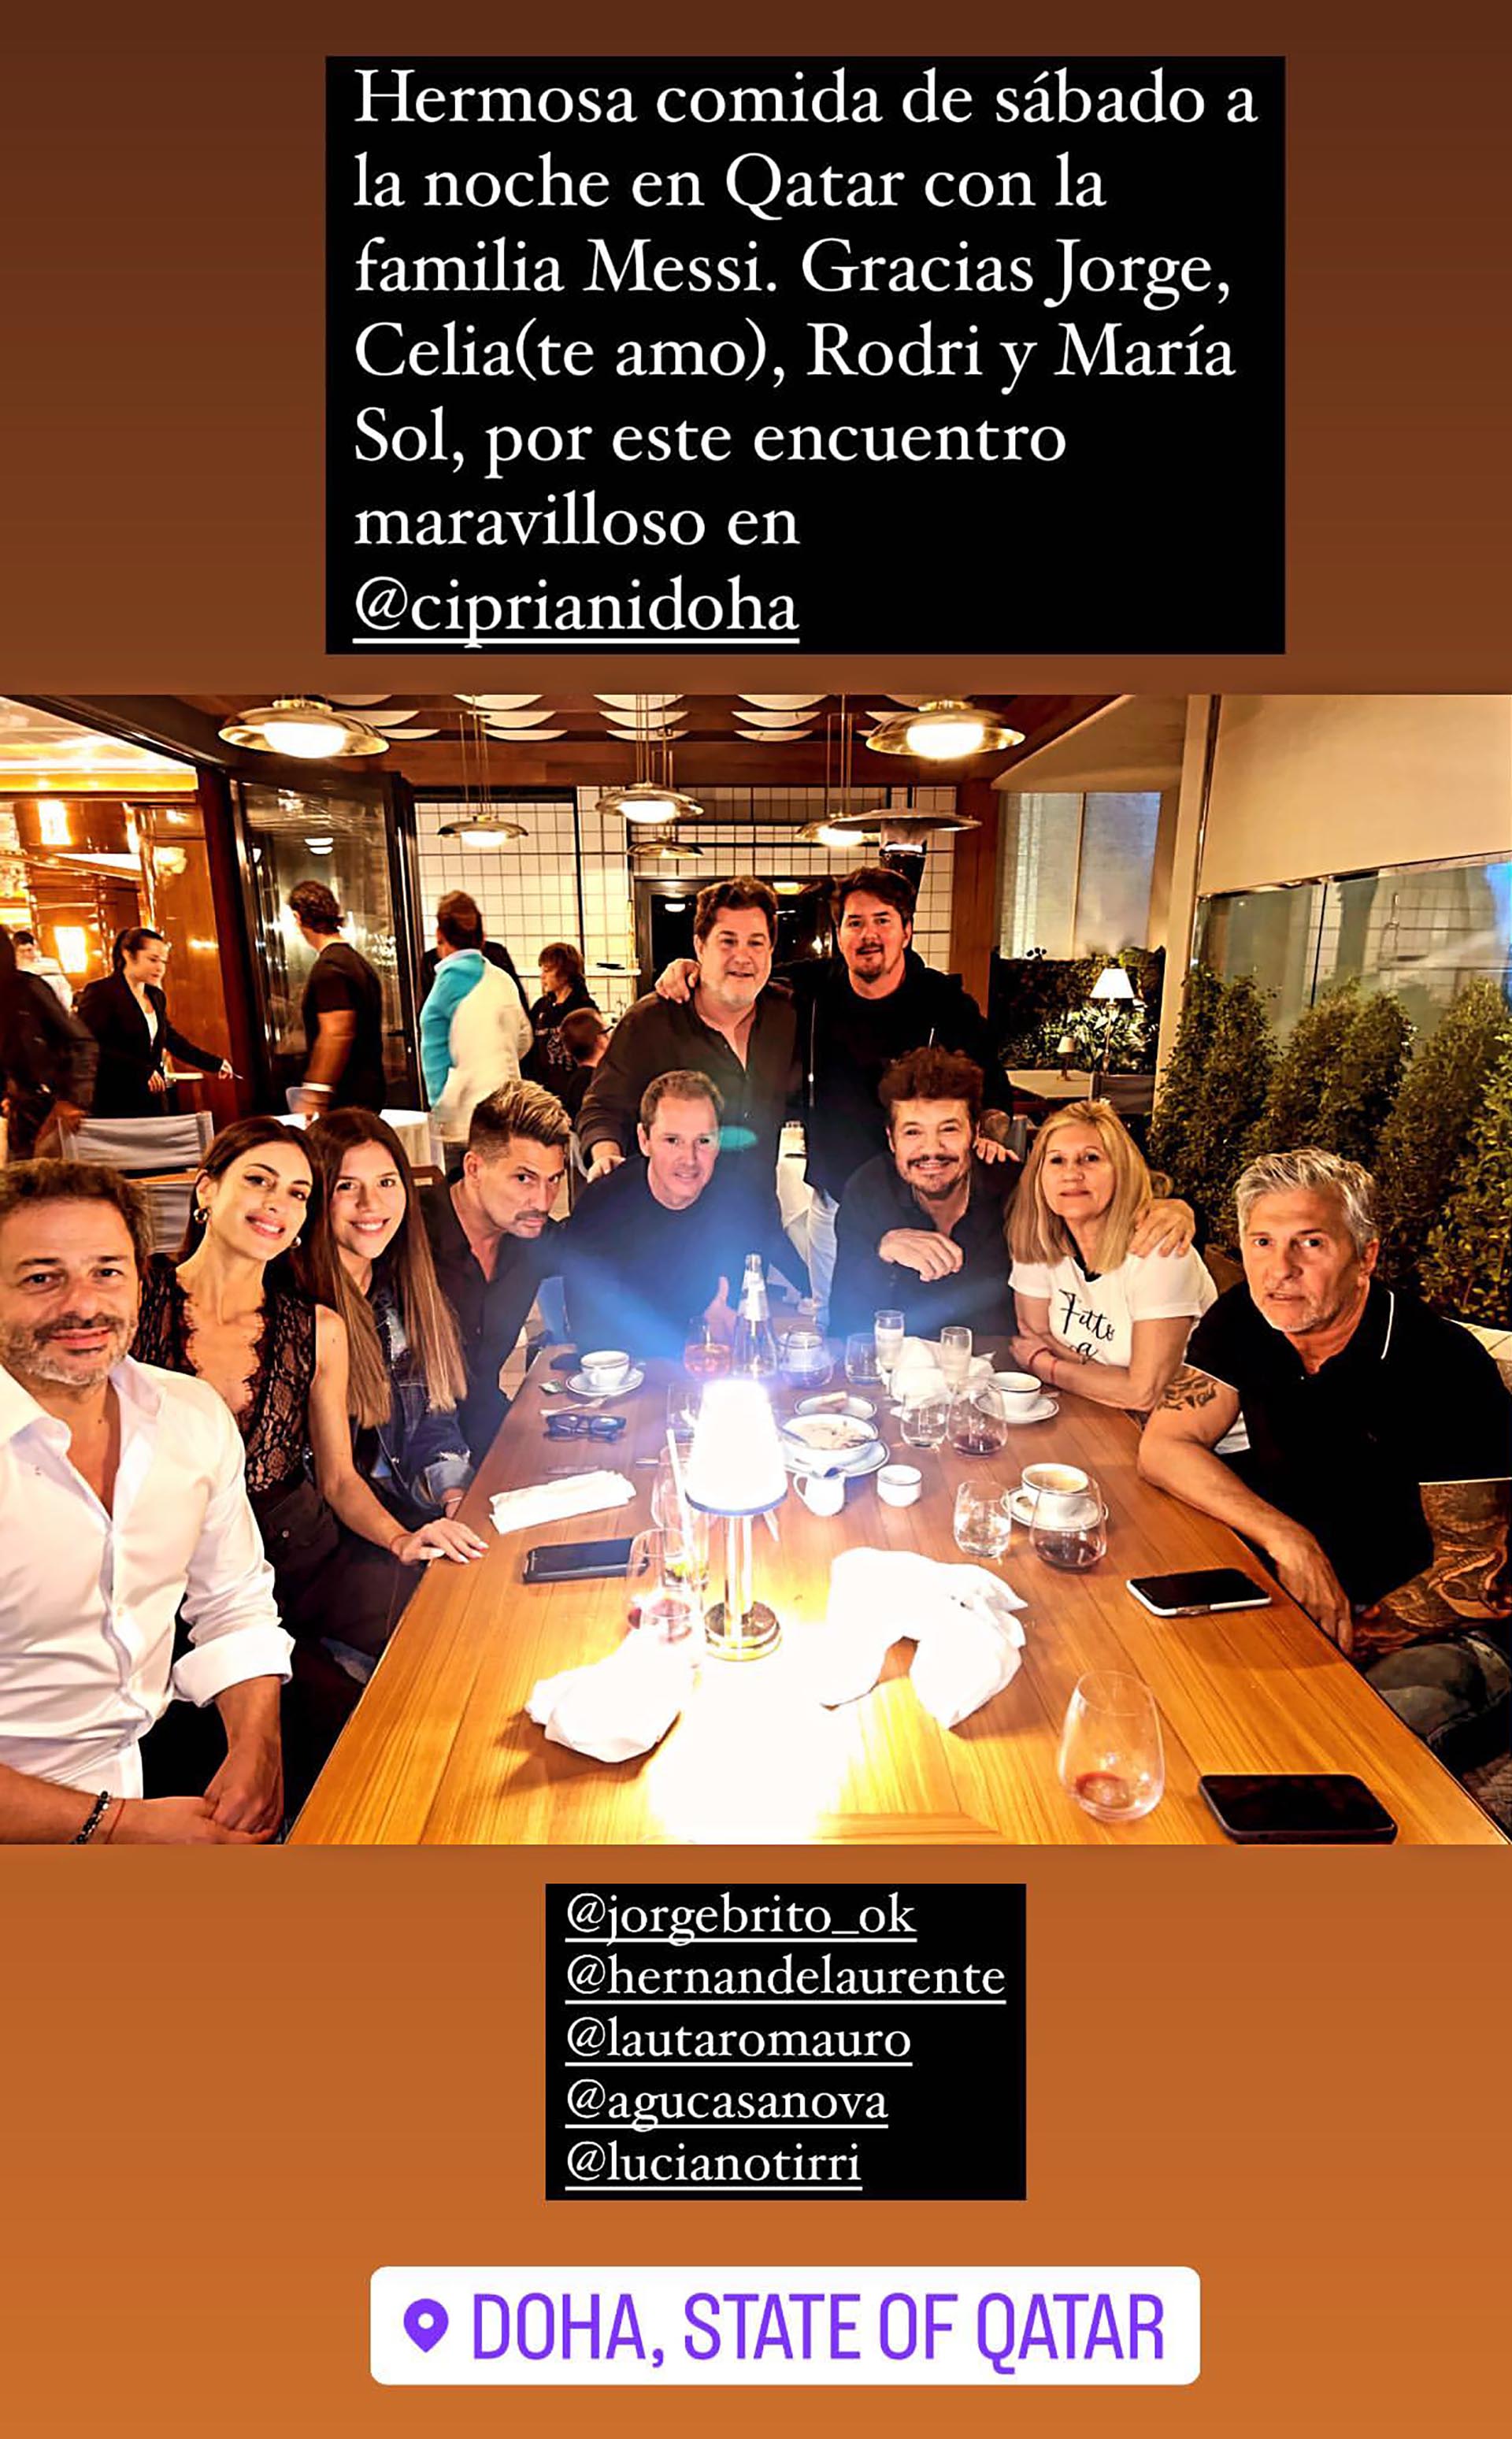 Marcelo Tinelli au dîner avec les parents et amis de Messi (Photo : IG/MarceloTinelli)